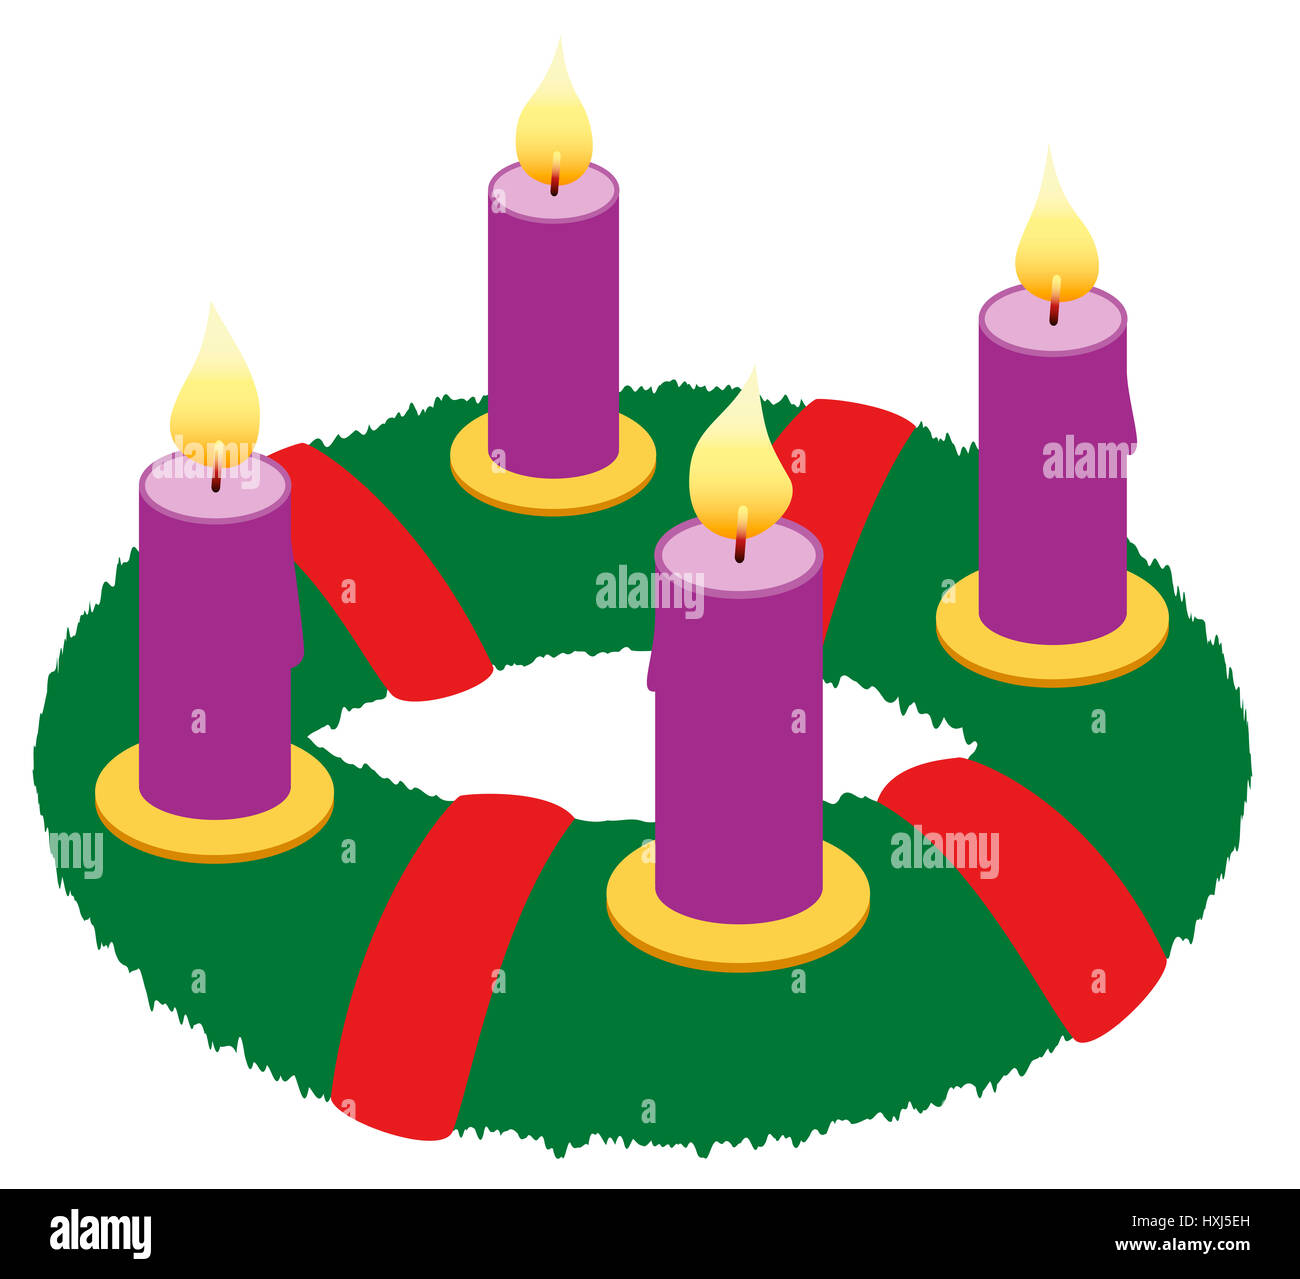 Adventskranz mit brennenden Kerzen lila und roten Bändern - isolierten Symbol Abbildung auf weißem Hintergrund. Stockfoto